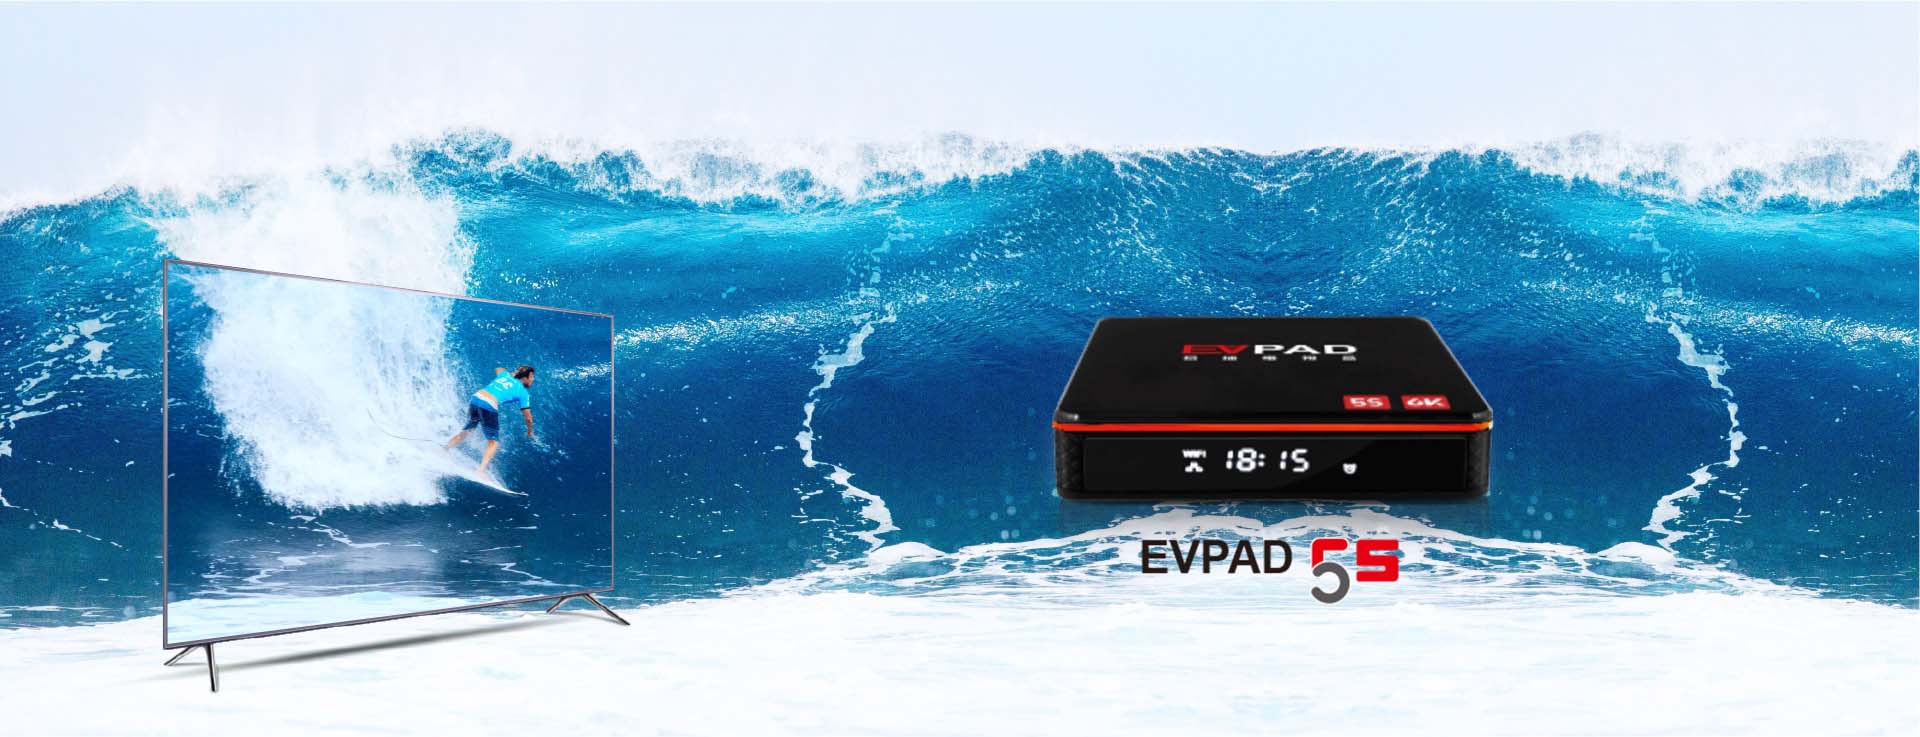 EVPAD 5S - 세계 최초의 음성 인식 AI TV 박스